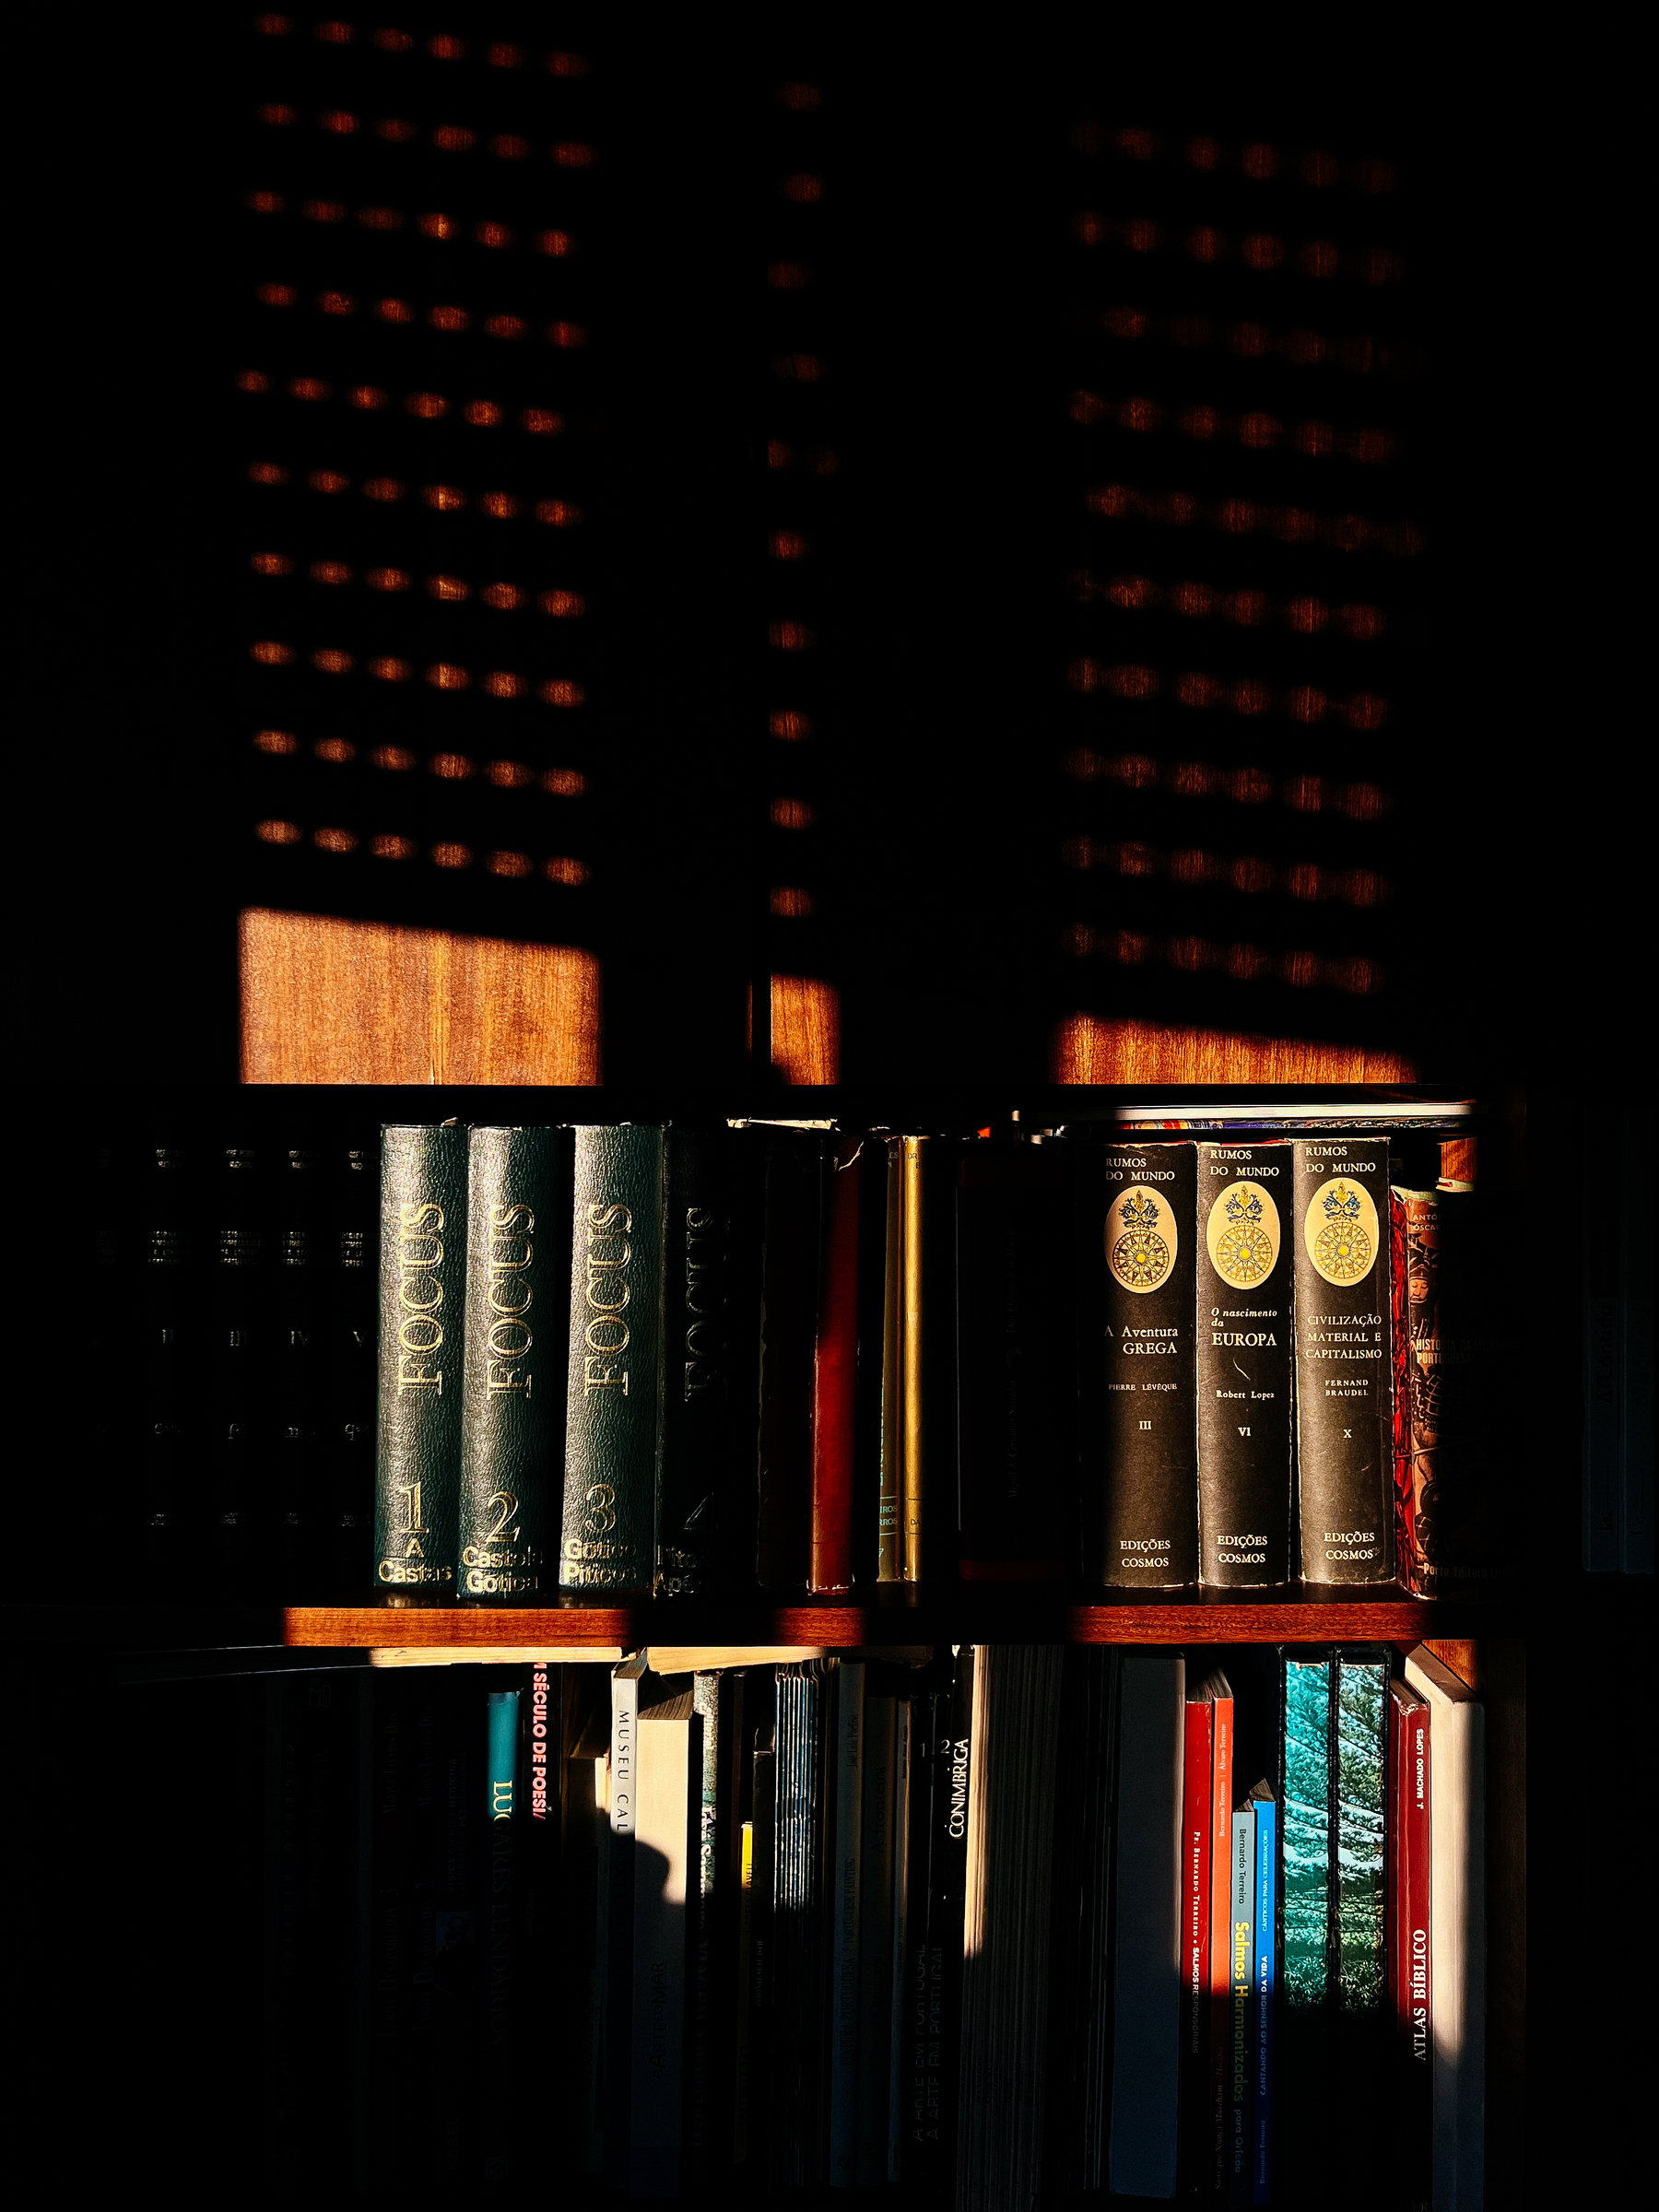 Sunset light hitting books on shelves. 